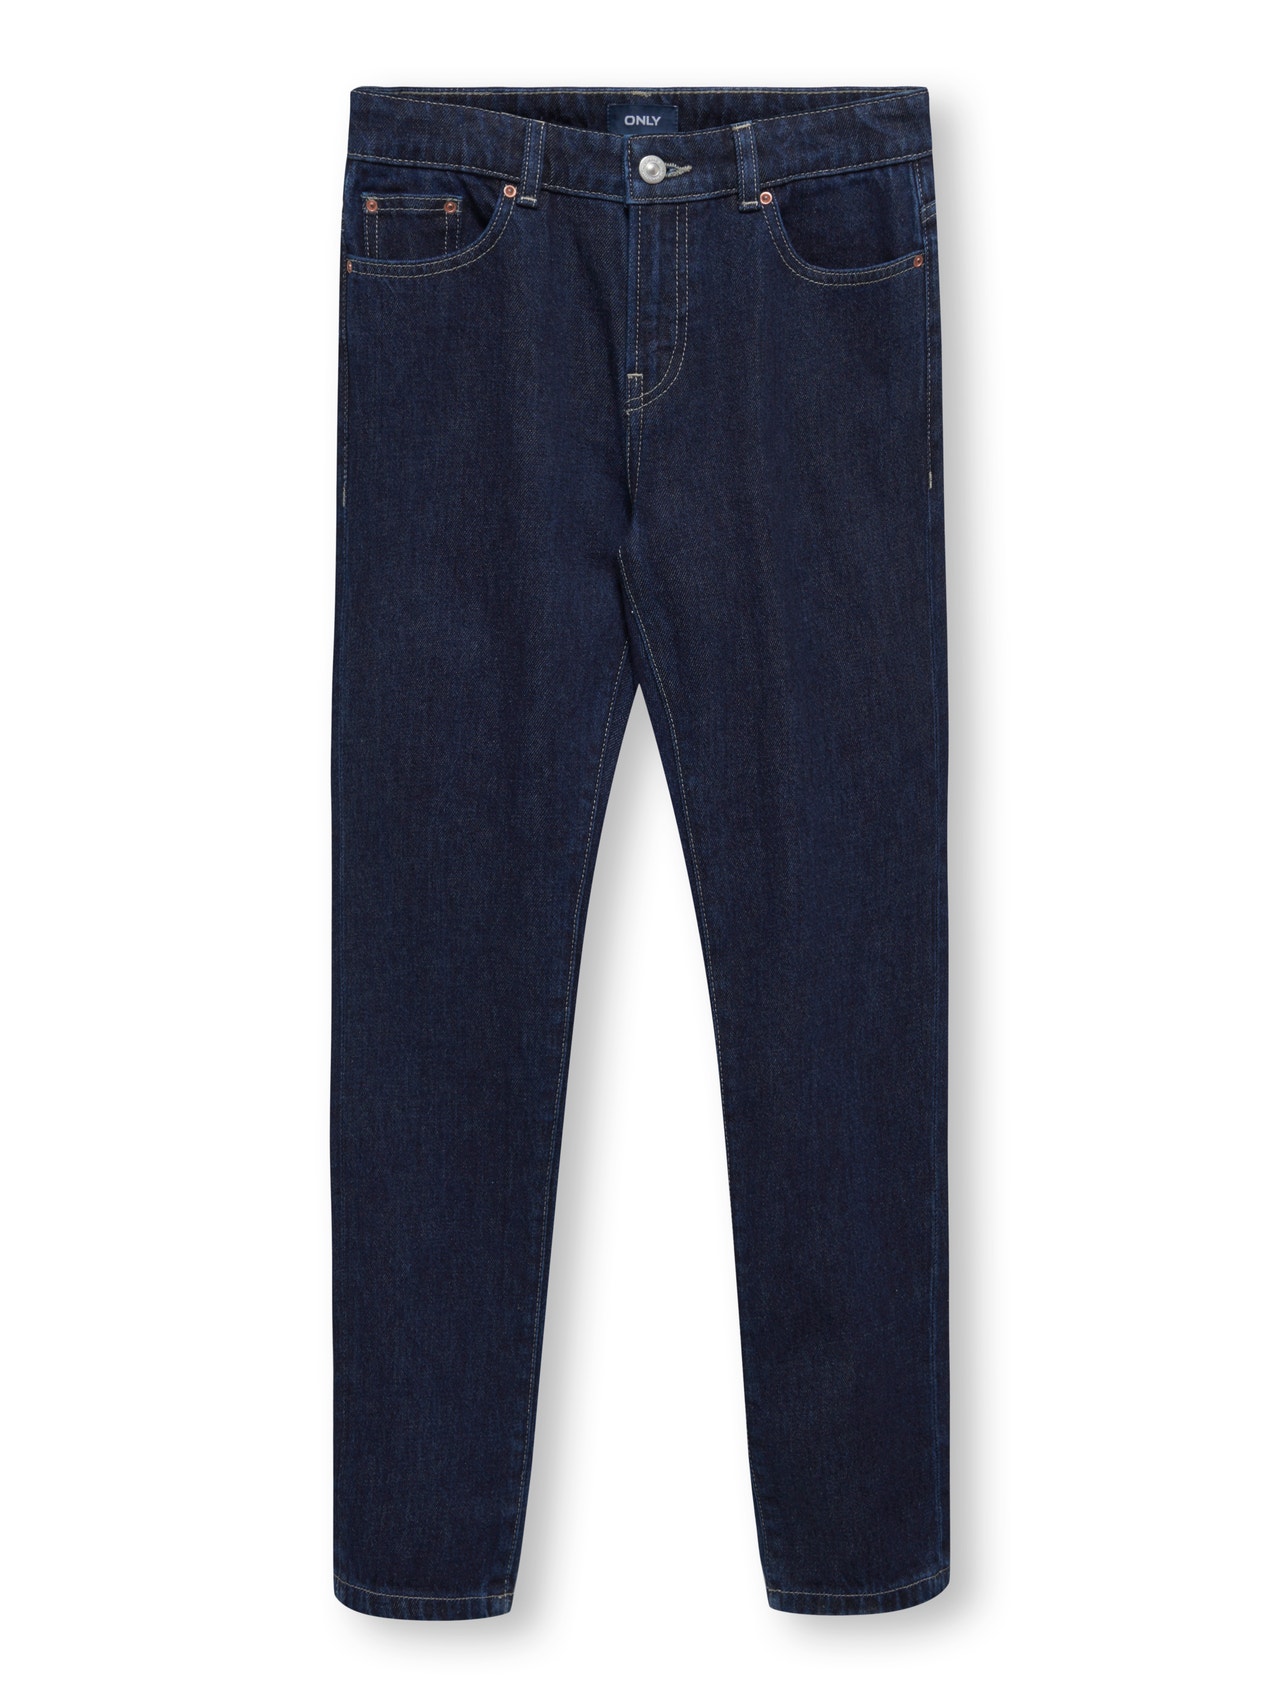 ONLY Loose fit Jeans -Dark Blue Denim - 15297156